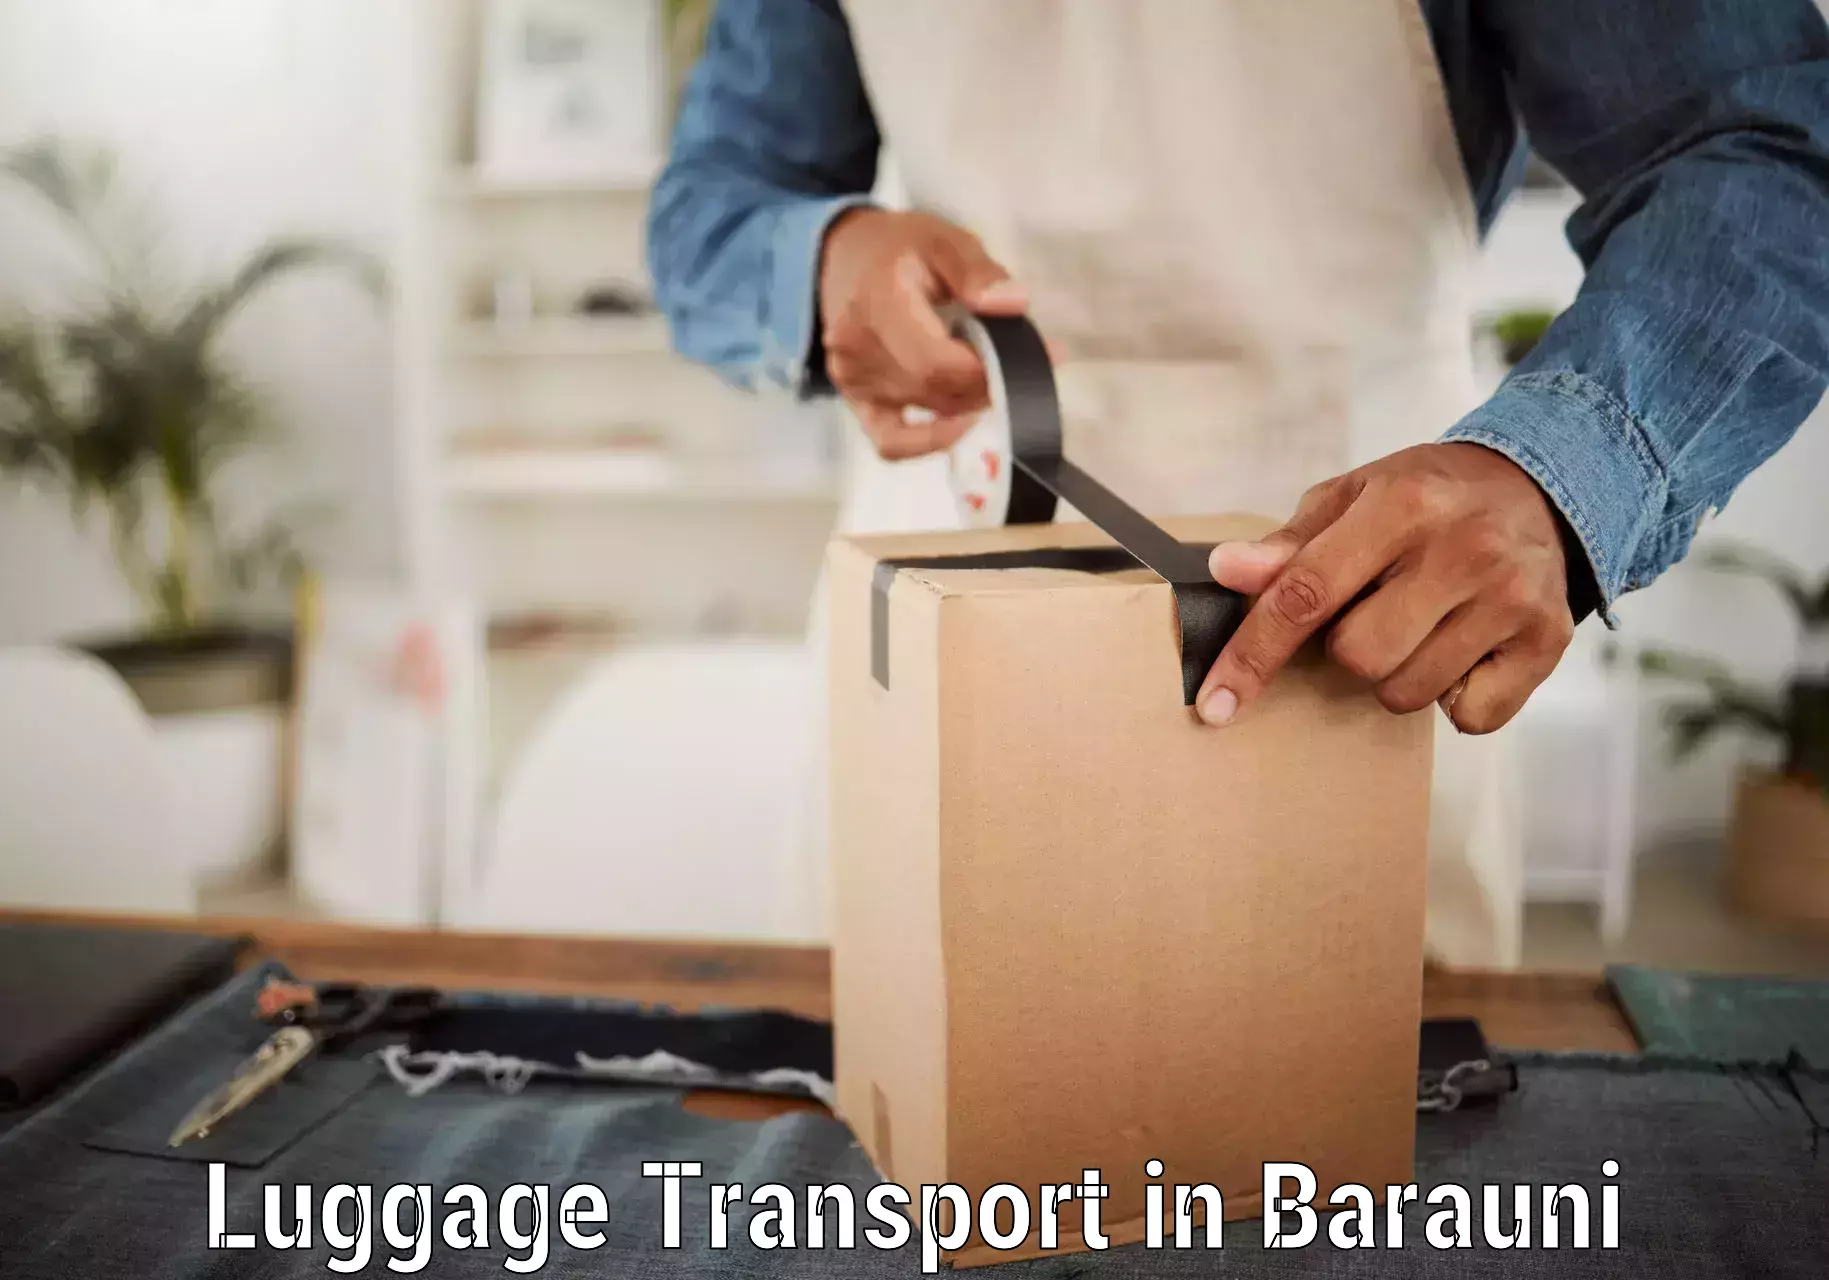 Regional luggage transport in Barauni